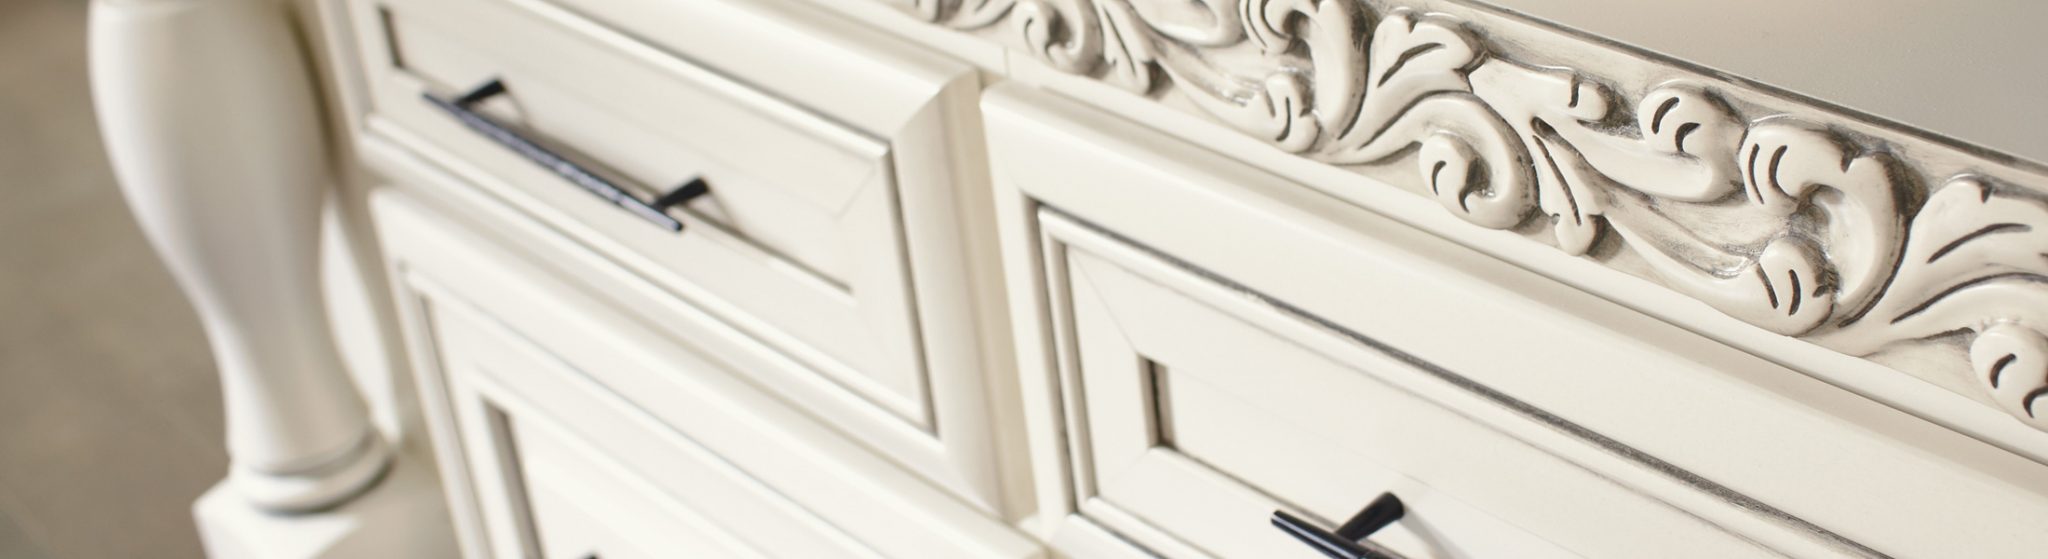 White Decorative Cabinetry Furniture